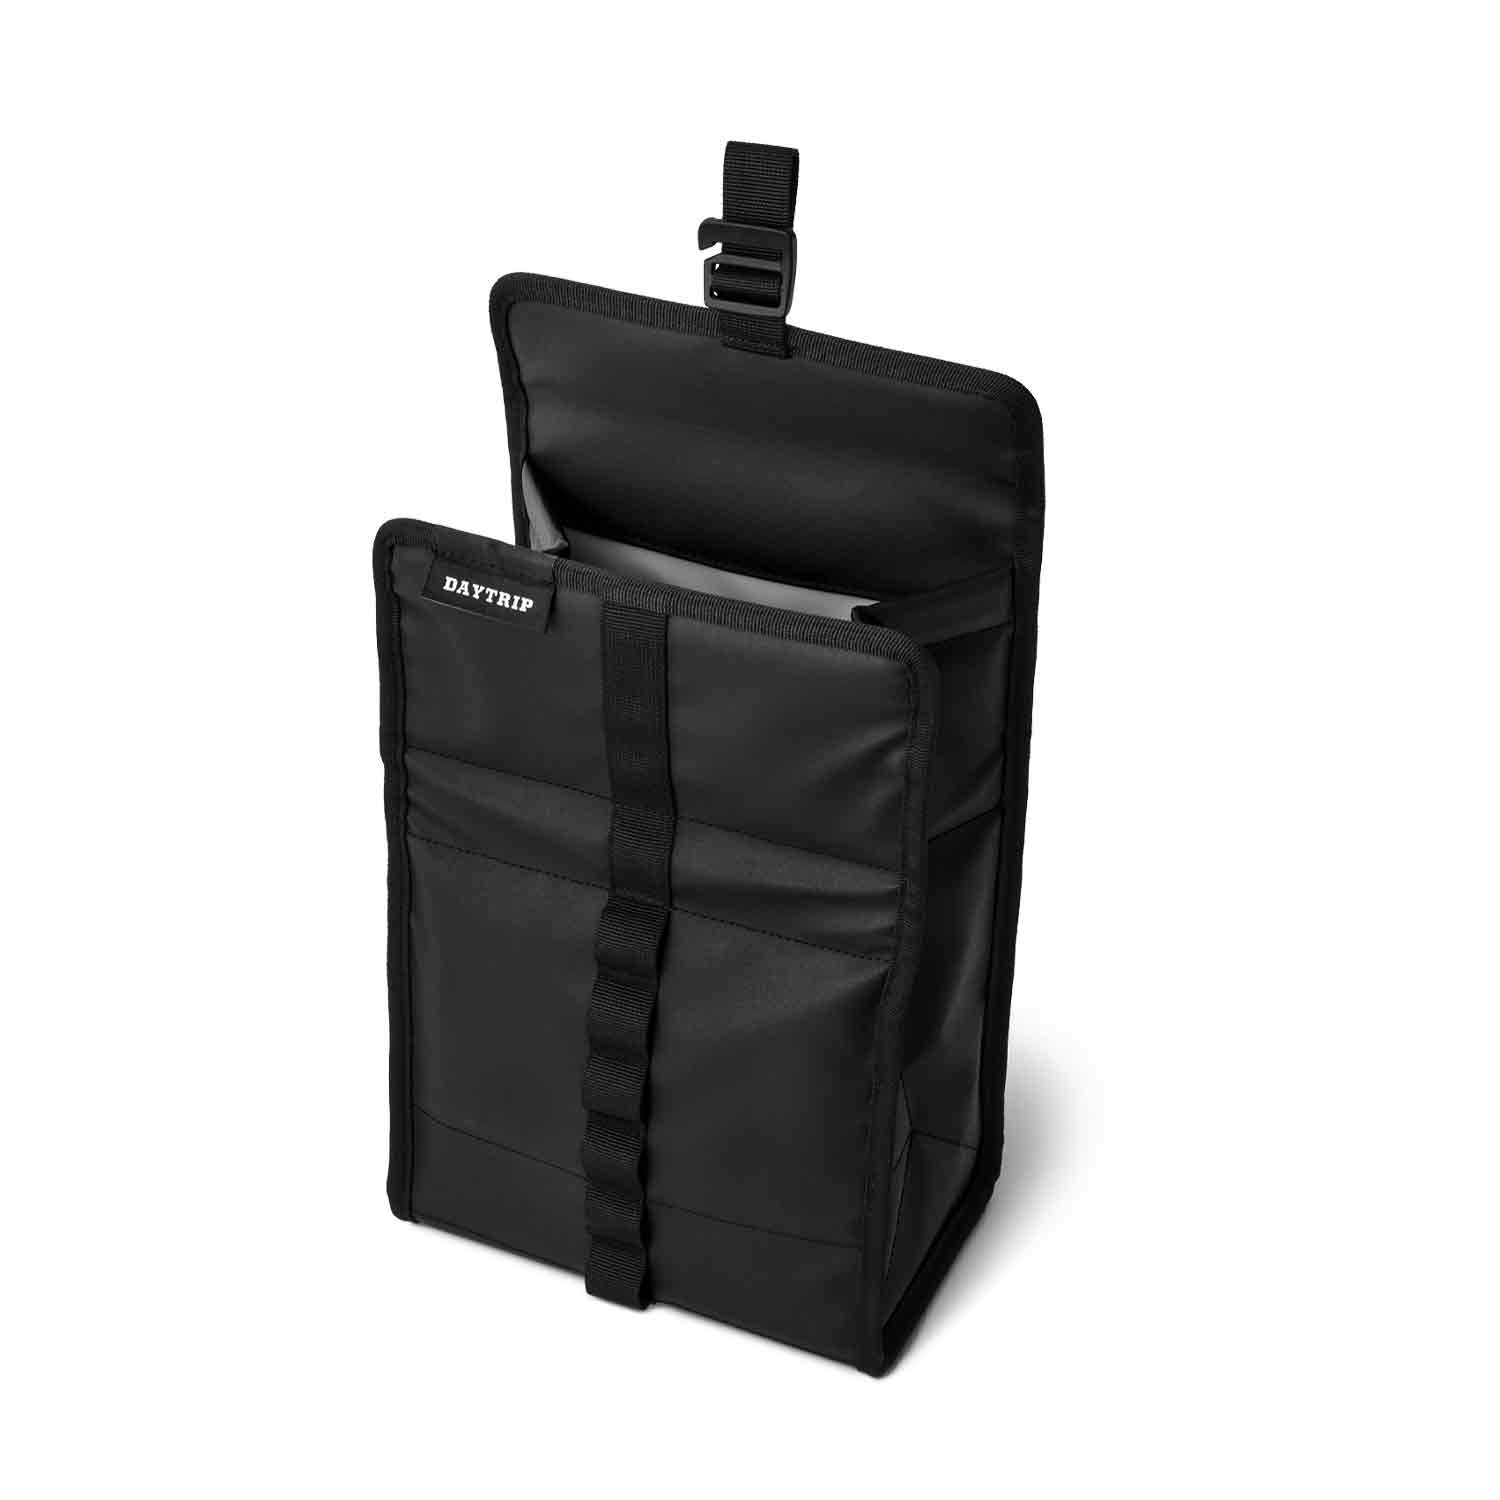 YETI Daytrip Lunch Bag (Limited Edition Black)